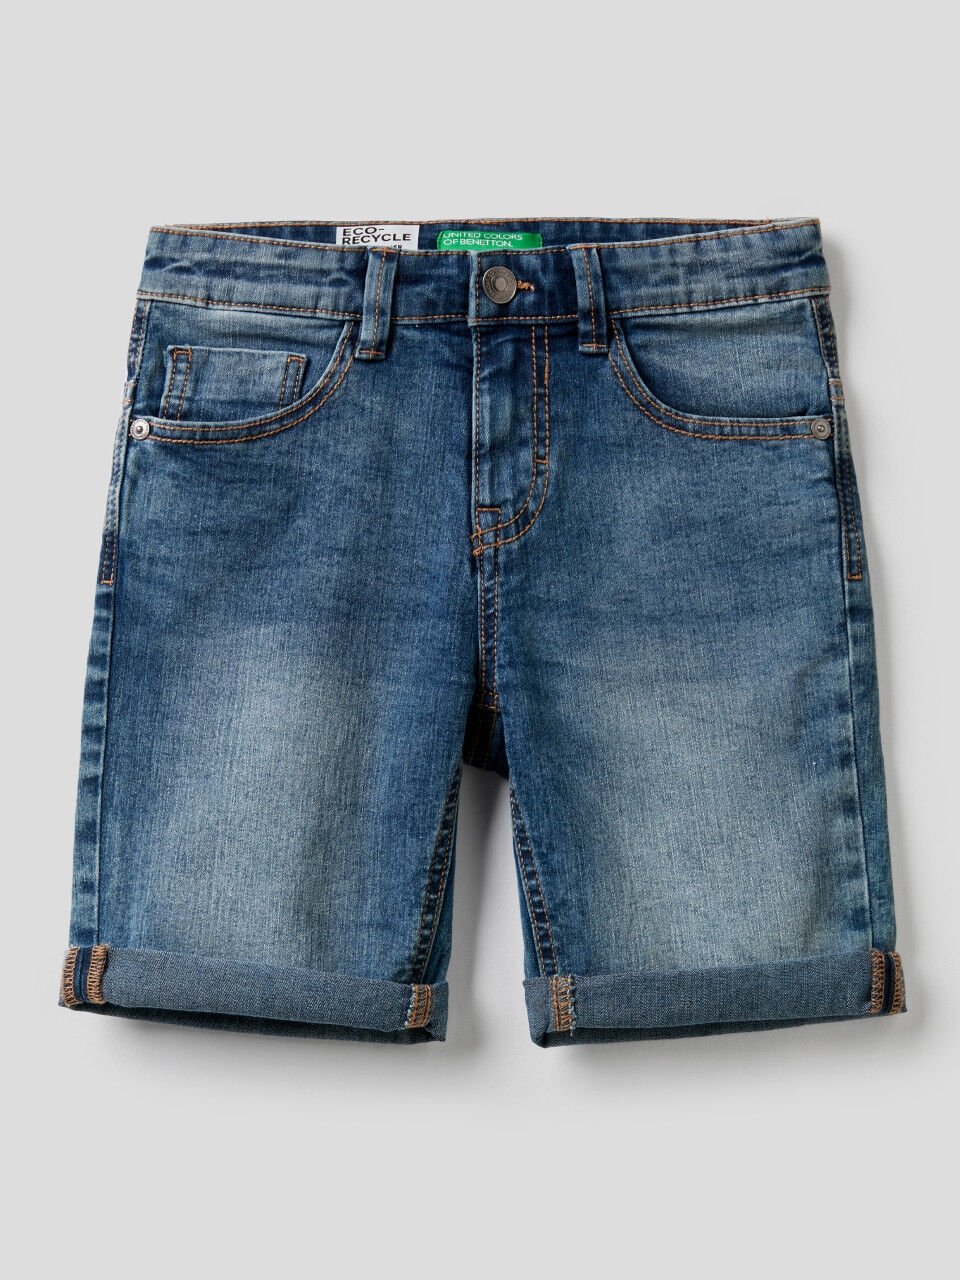 Jungen Bekleidung Hosen Shorts DE 74 UNITED COLORS OF BENETTON Jungen Shorts Gr 